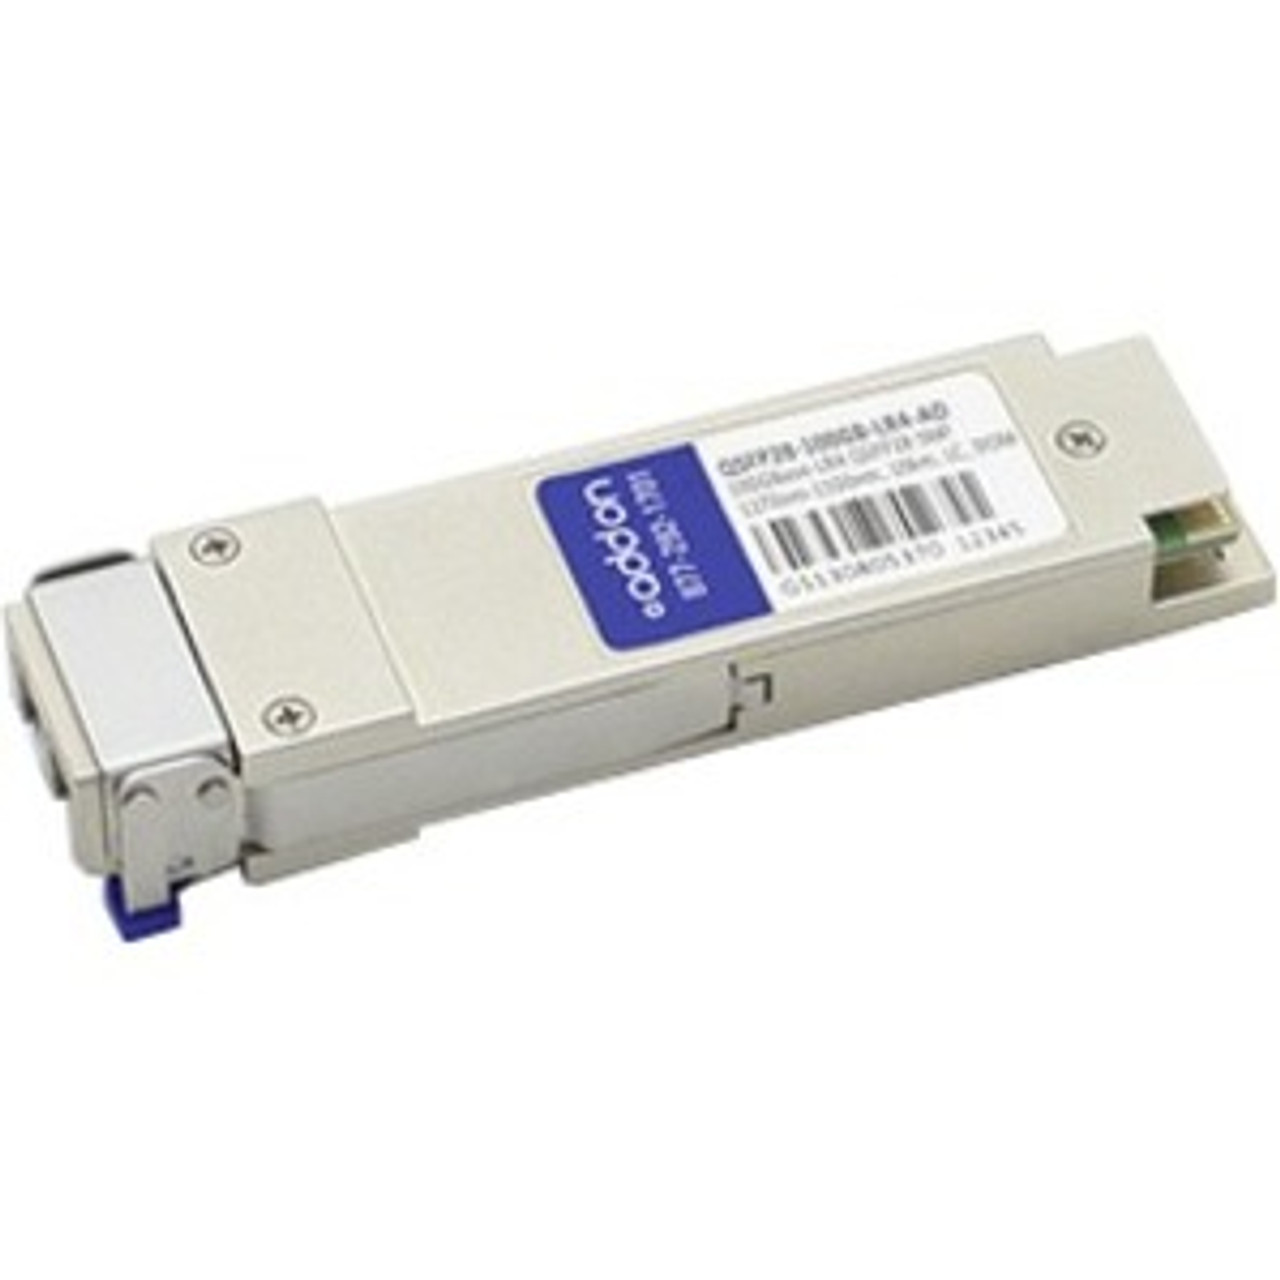 QSFP28-100GB-LR4-AO